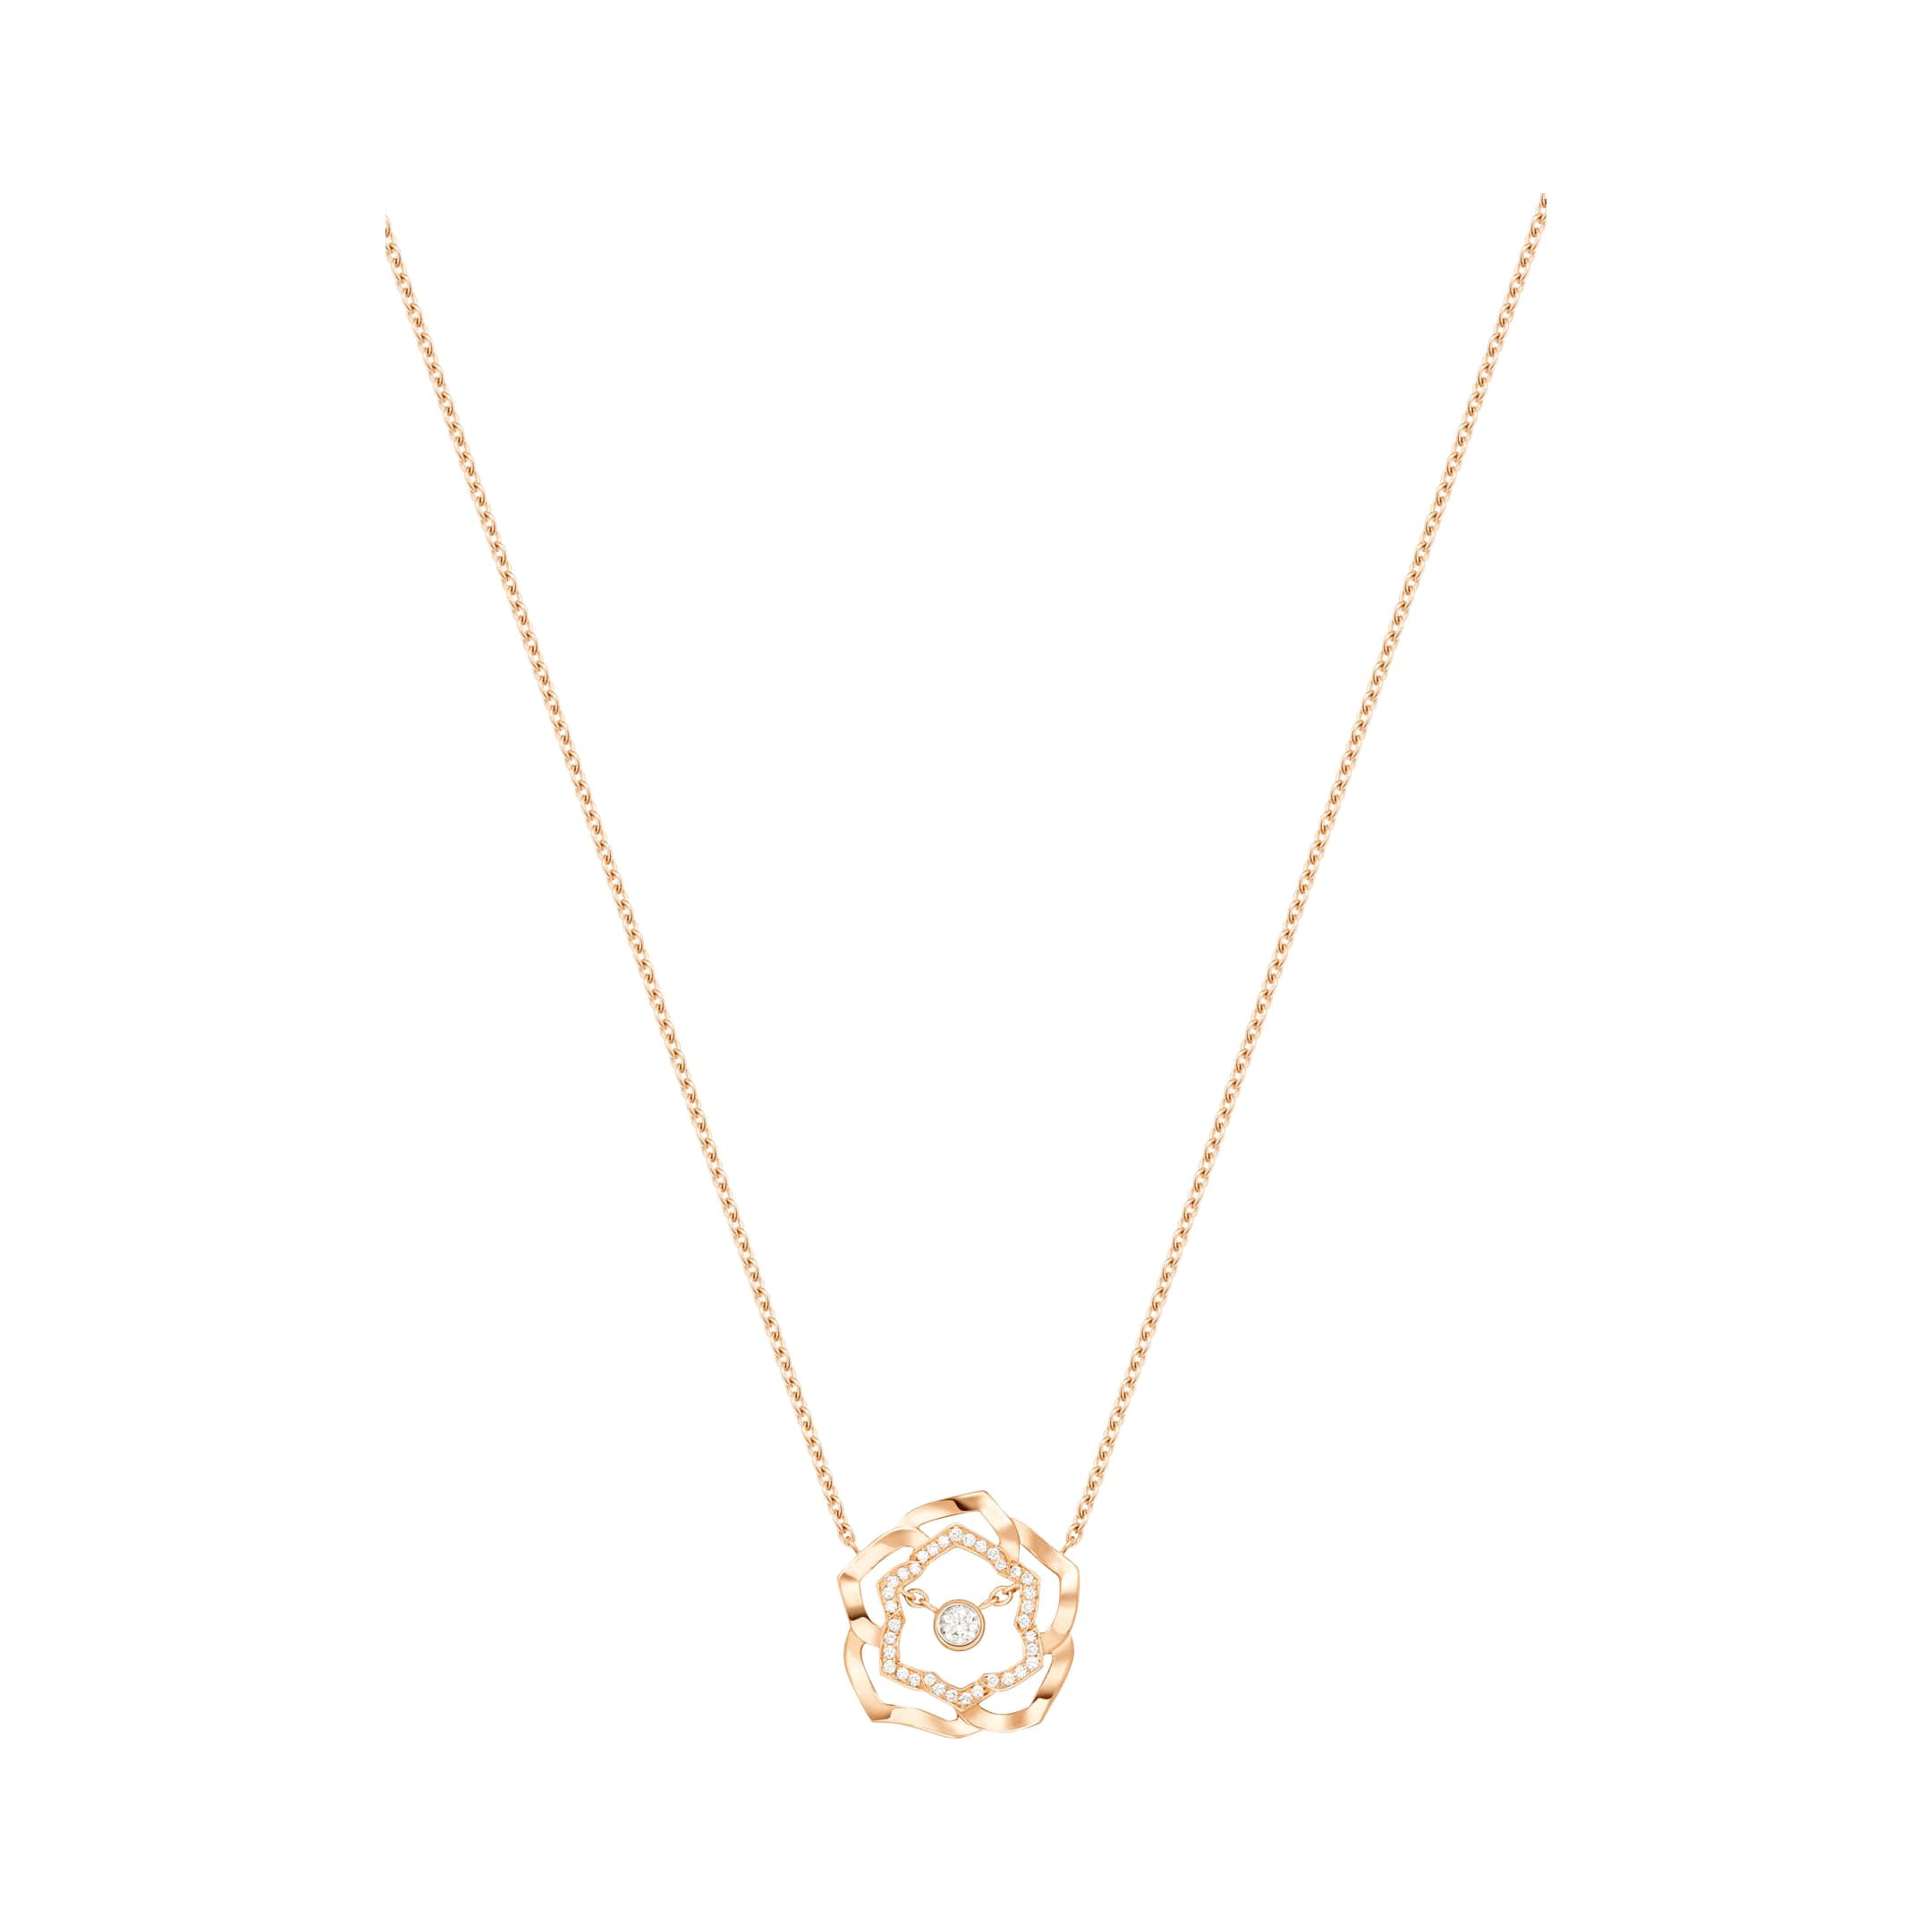 Mórdhíol Jewelry OEM/ODM OEM Rose pendant i 18K ardaigh ór a leagtar saincheaptha a rinneadh le do dhearadh